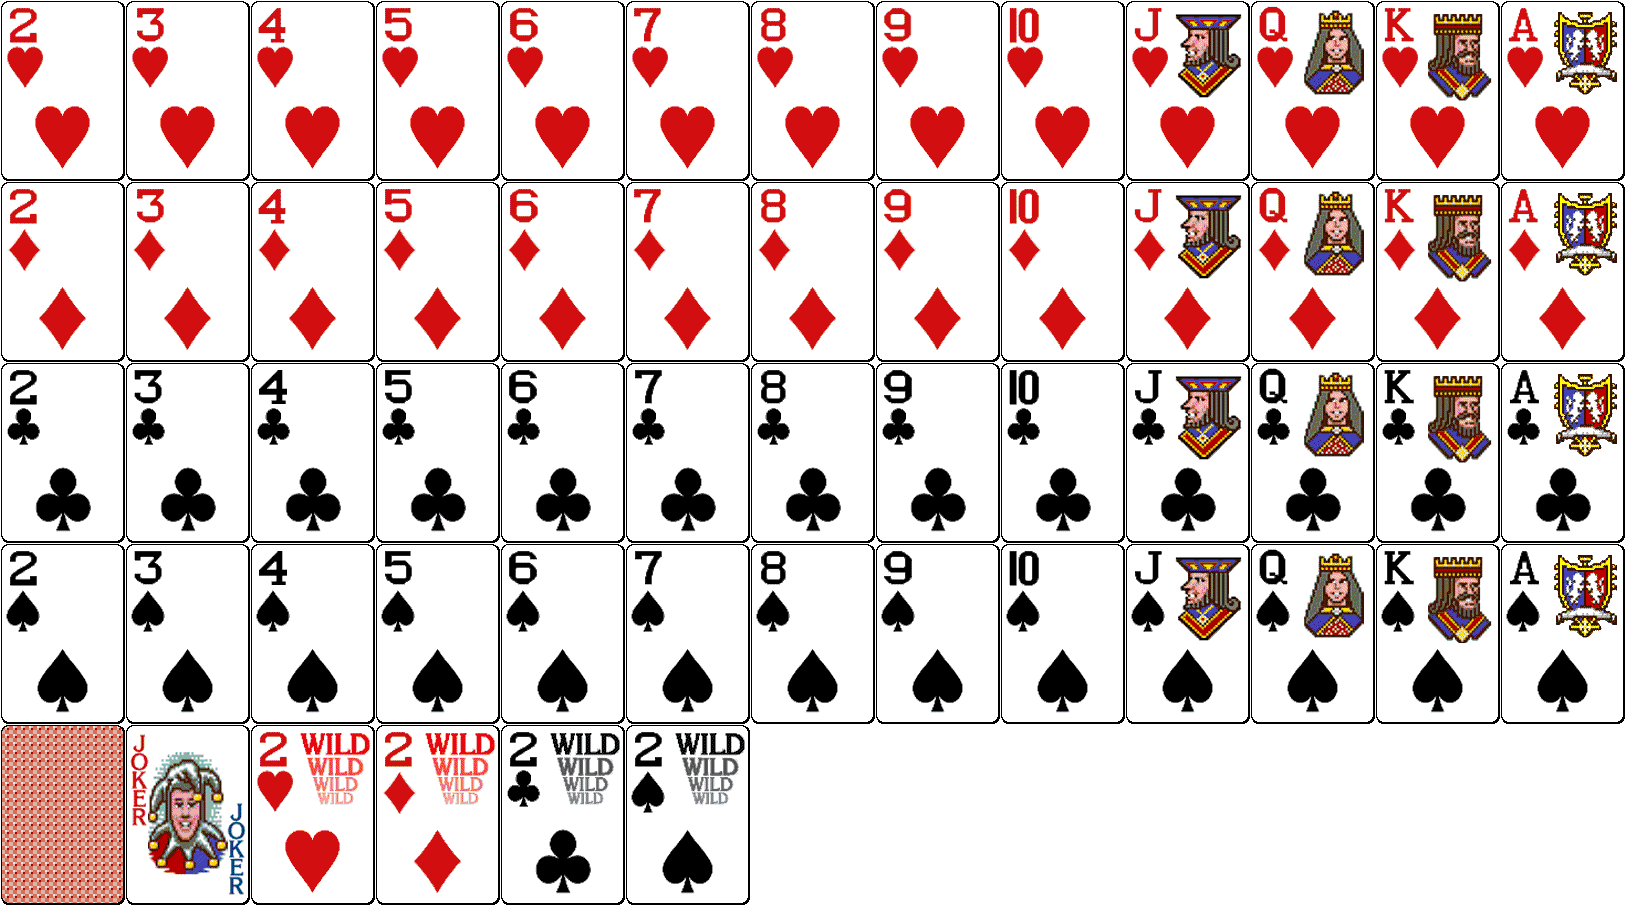 Полный набор карт. Покер колода 52 карты. Колода в 52 карты в холдеме. Мини карты. Маленькие игральные карты.